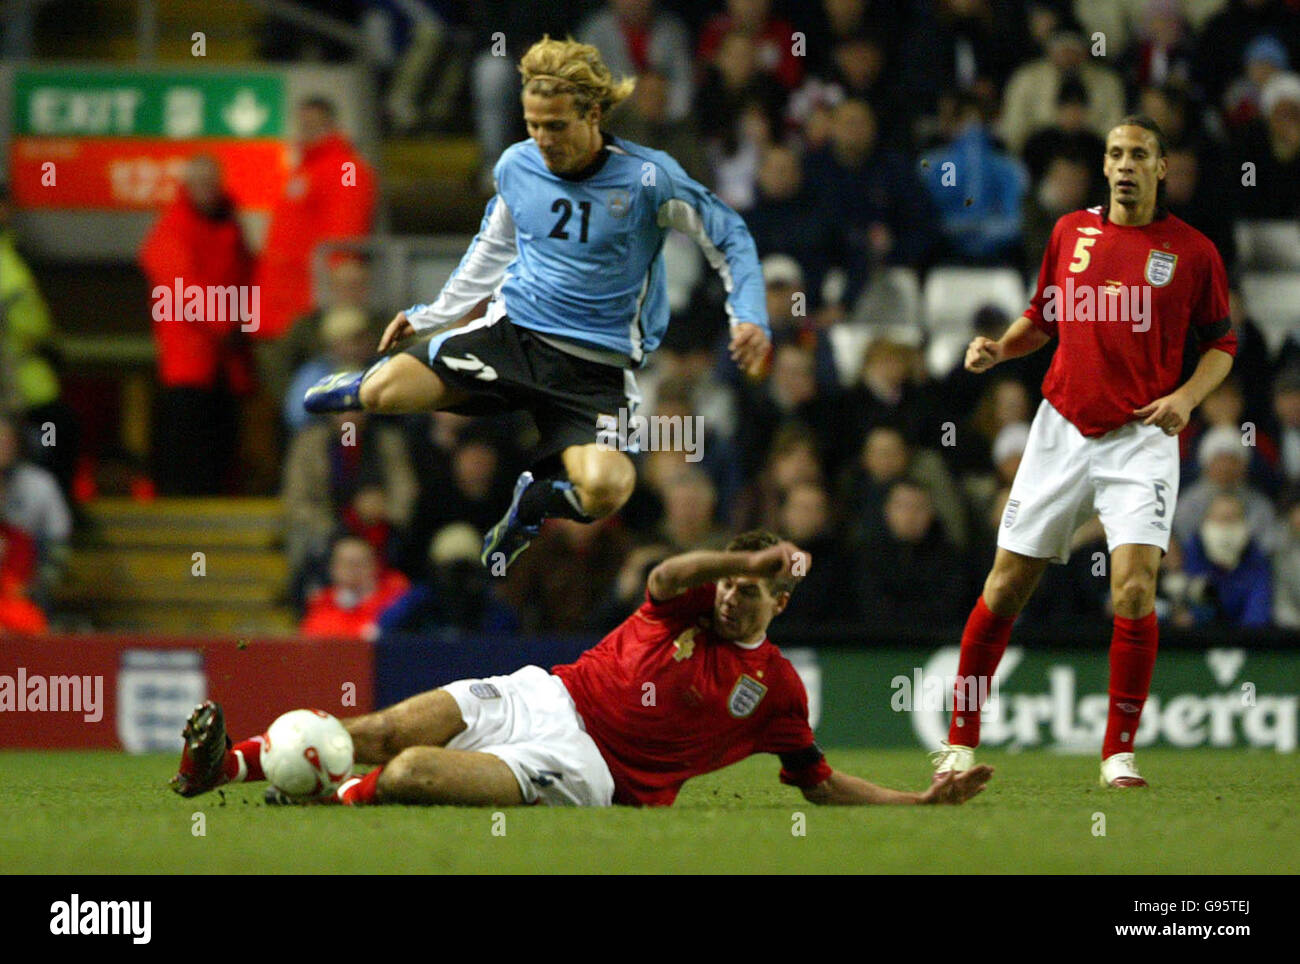 Calcio - Internazionale amichevole - Inghilterra / Uruguay - Anfield. Steven Gerrard in Inghilterra affronta Diego Forlan dell'Uruguay Foto Stock